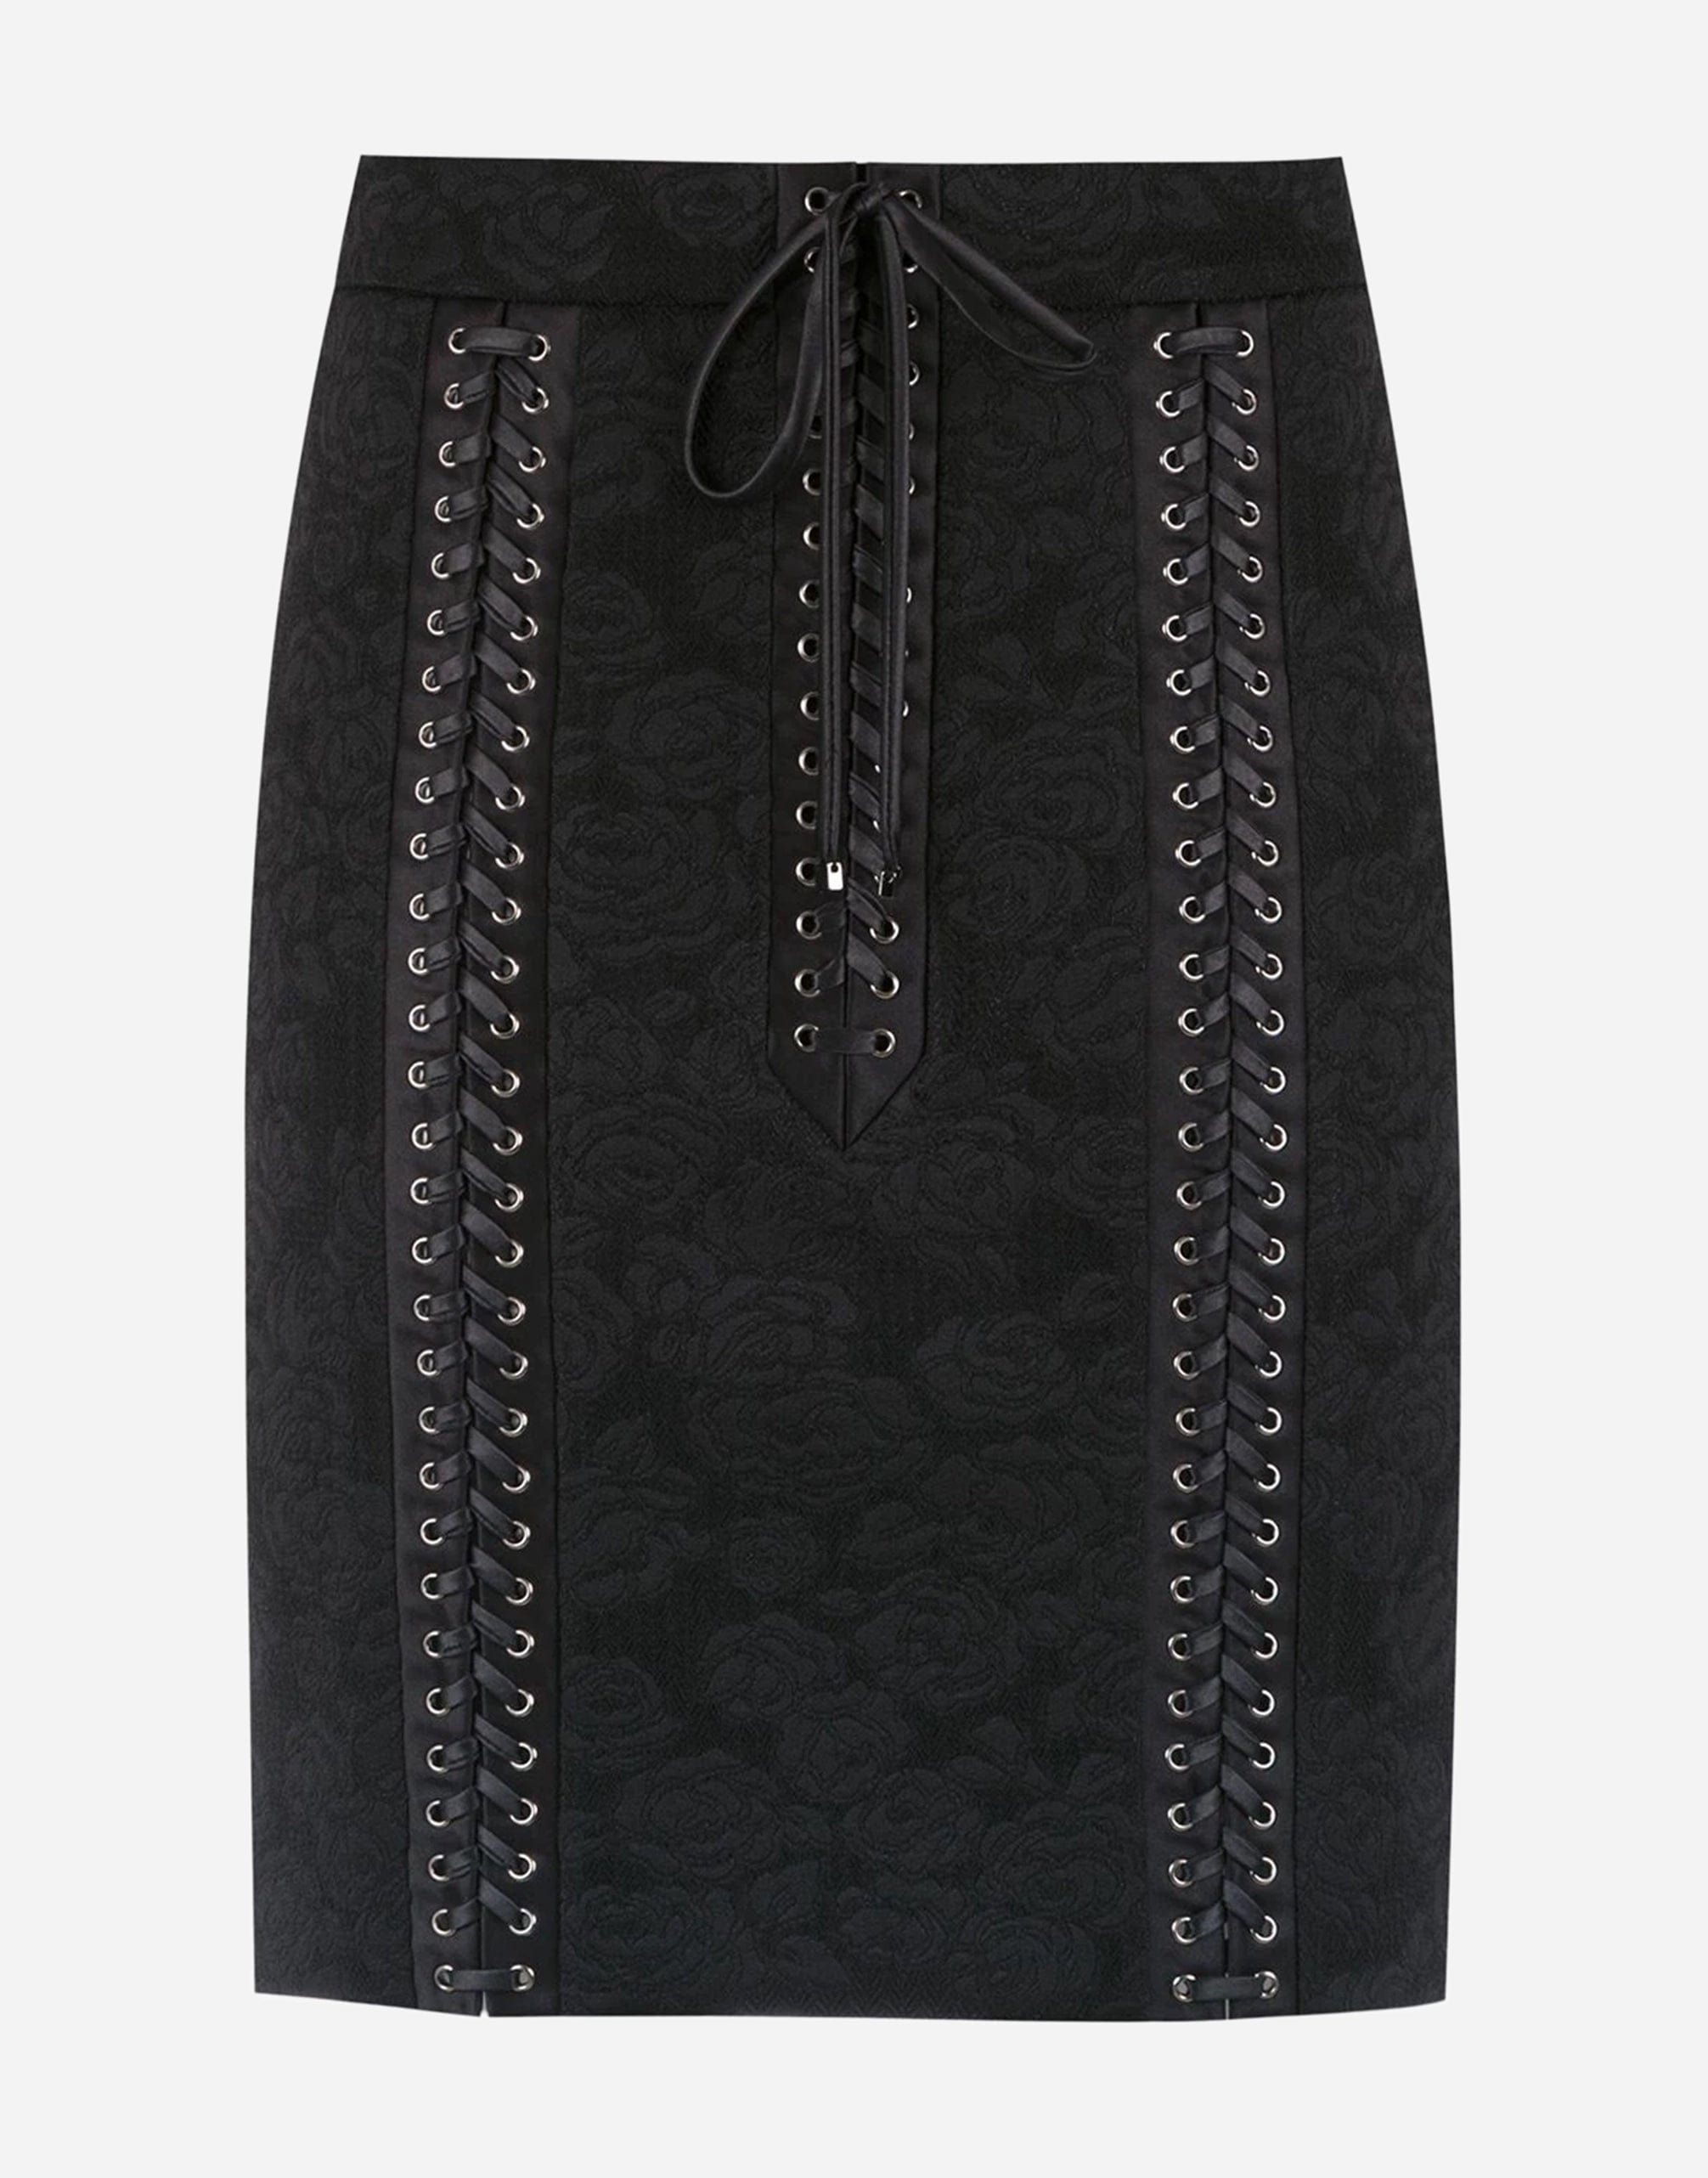 Dolce & Gabbana Jacquard Miniskirt